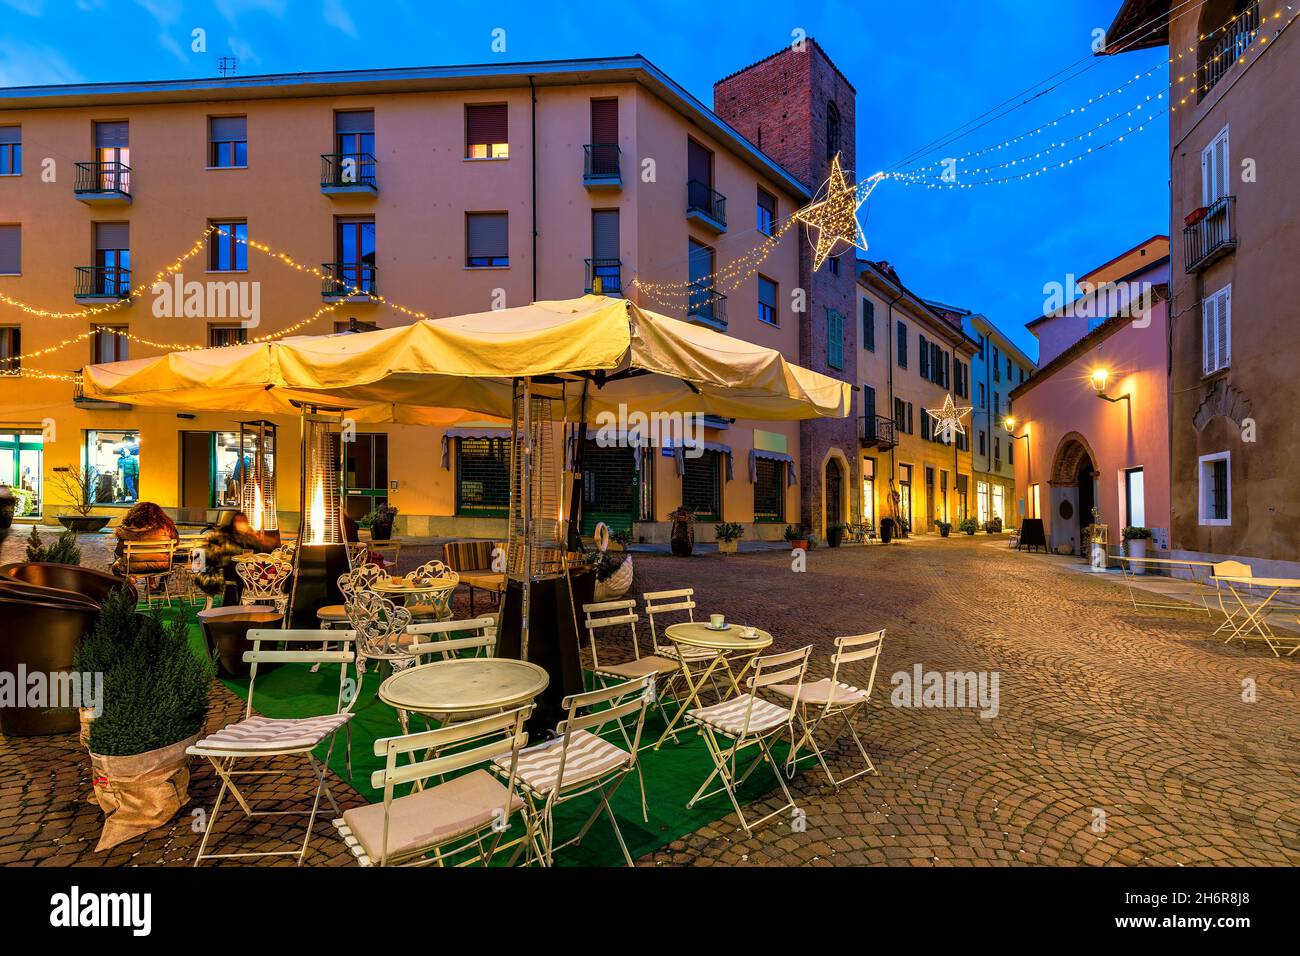 Restaurant im Freien auf einem kleinen gepflasterten Platz, der abends von Weihnachtslichtern in der Altstadt von Alba, Piemont, Norditalien, beleuchtet wird. Stockfoto